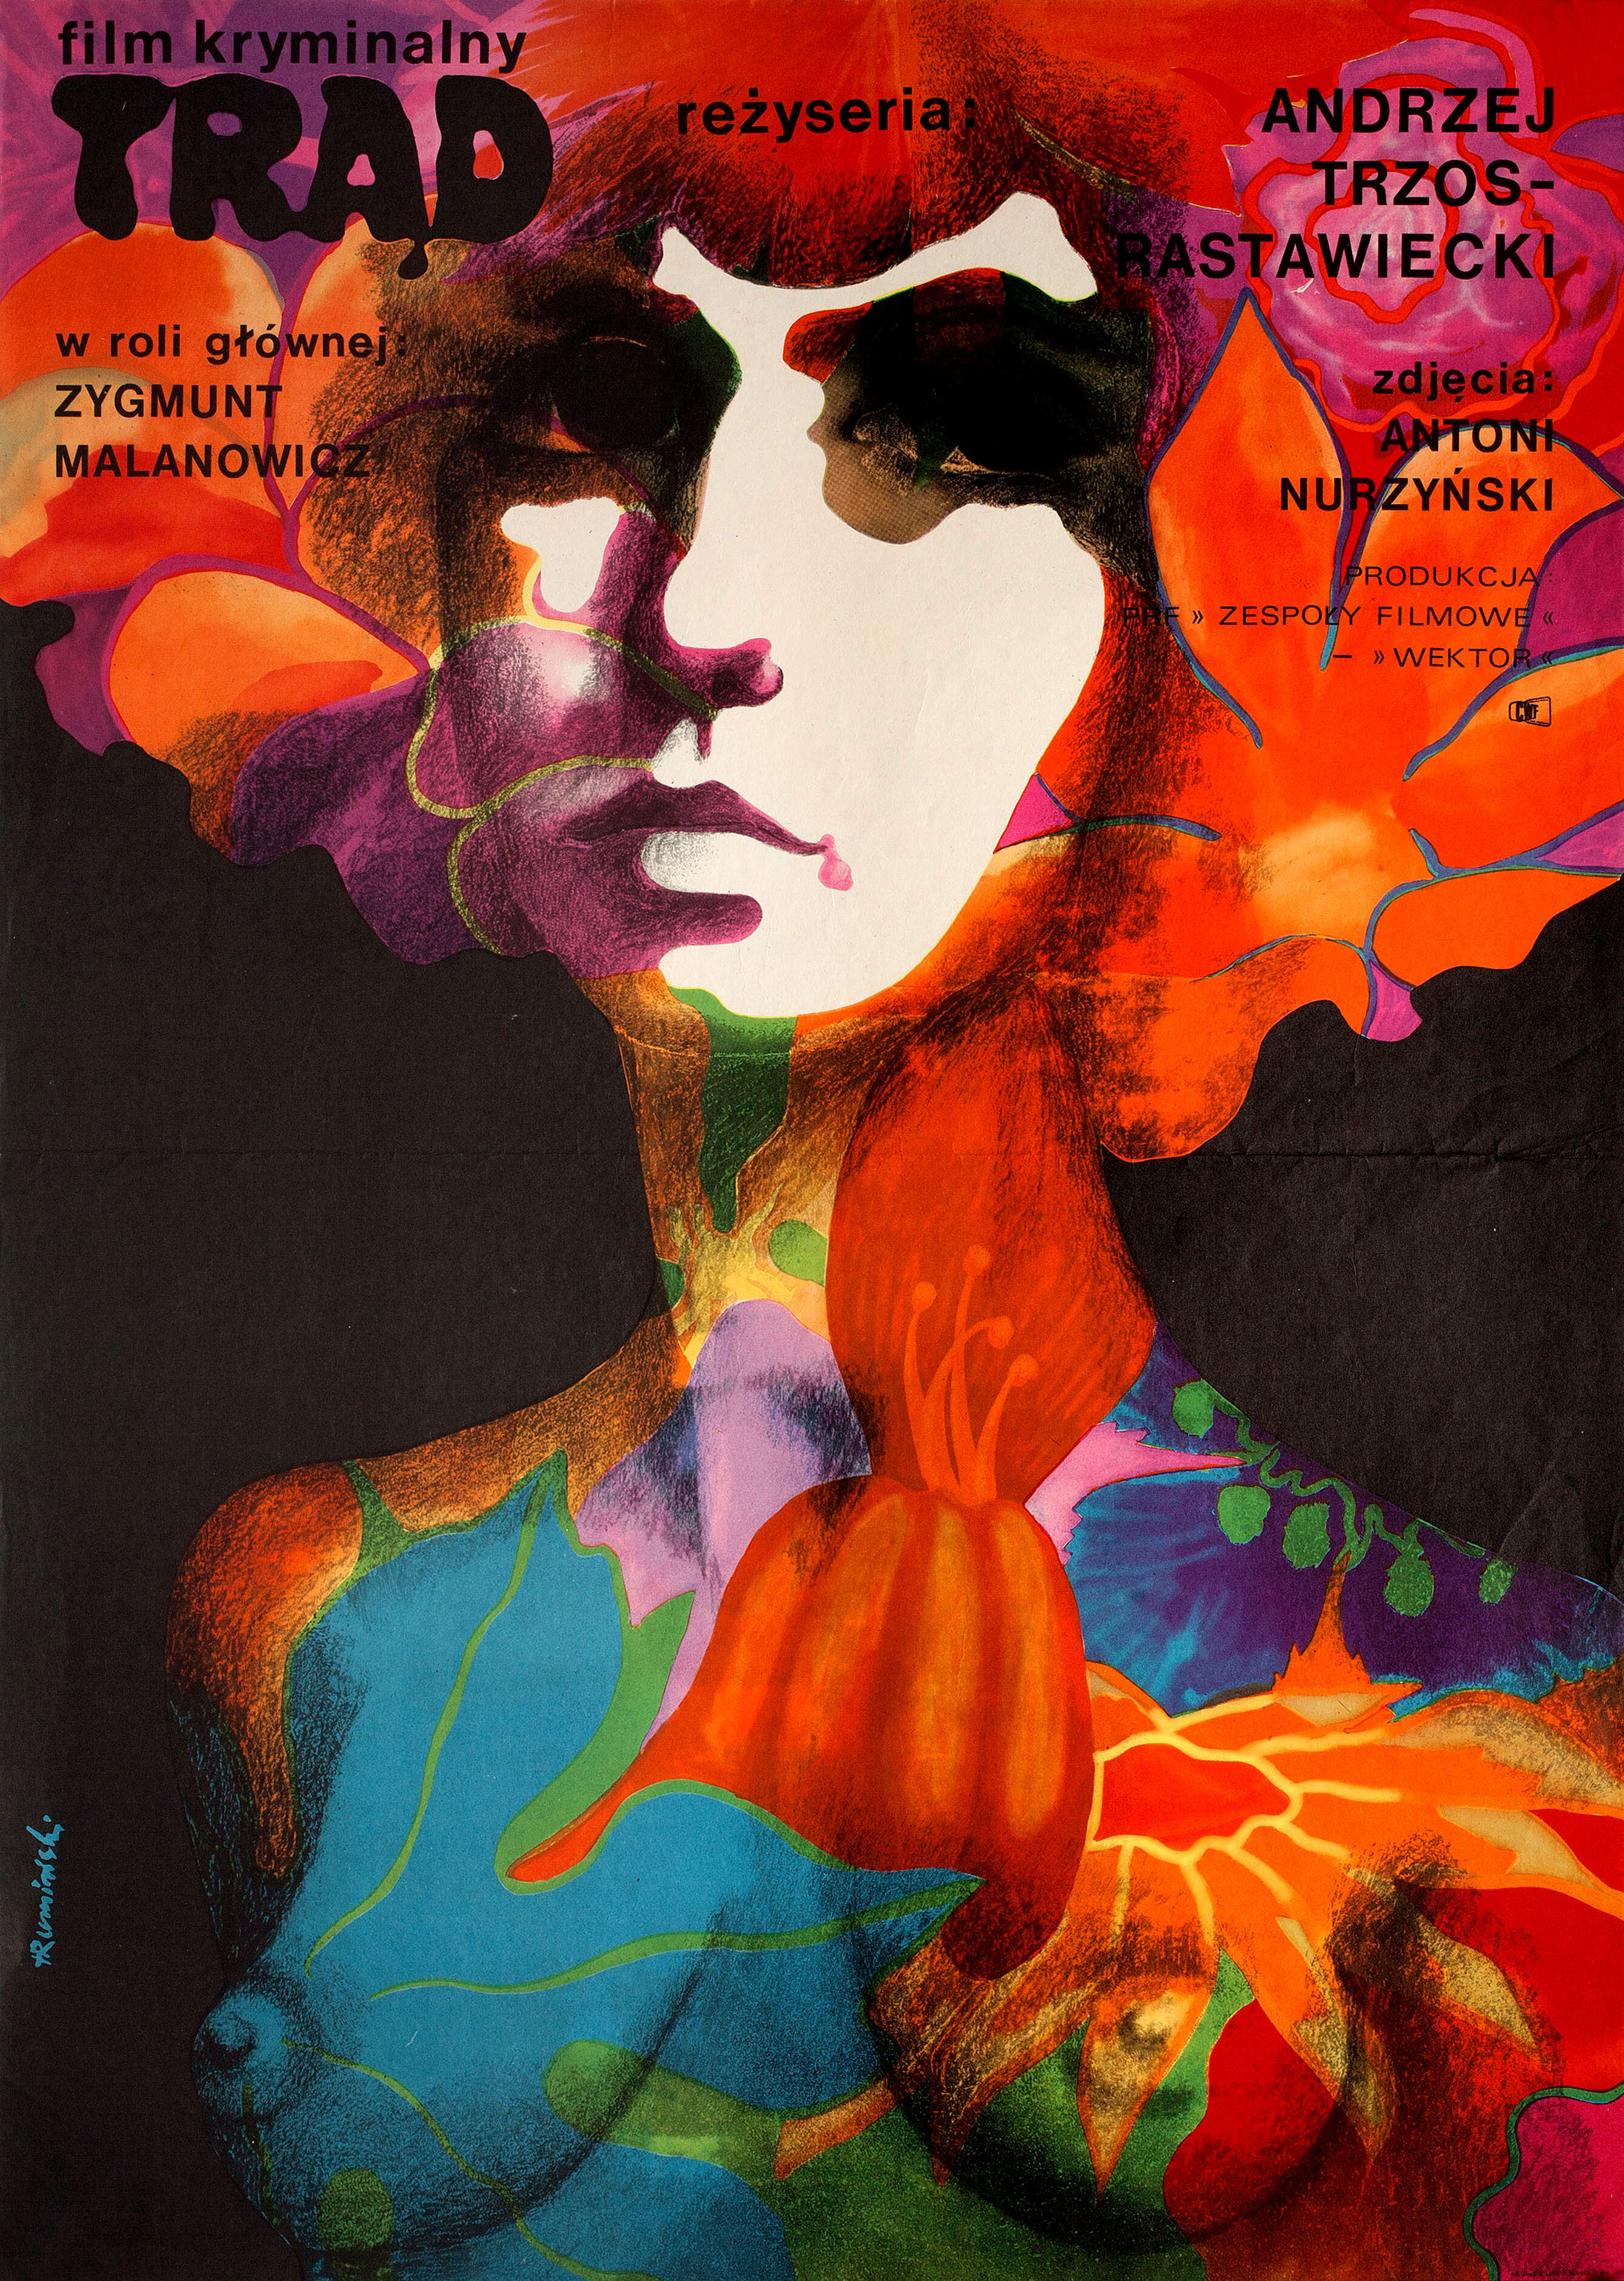 Проказа (Leprosy, 1973), режиссёр Анджей Тшос-Раставецкий, польский постер к фильму, художник Томаш Румински (психоделическое искусство, 1973 год)